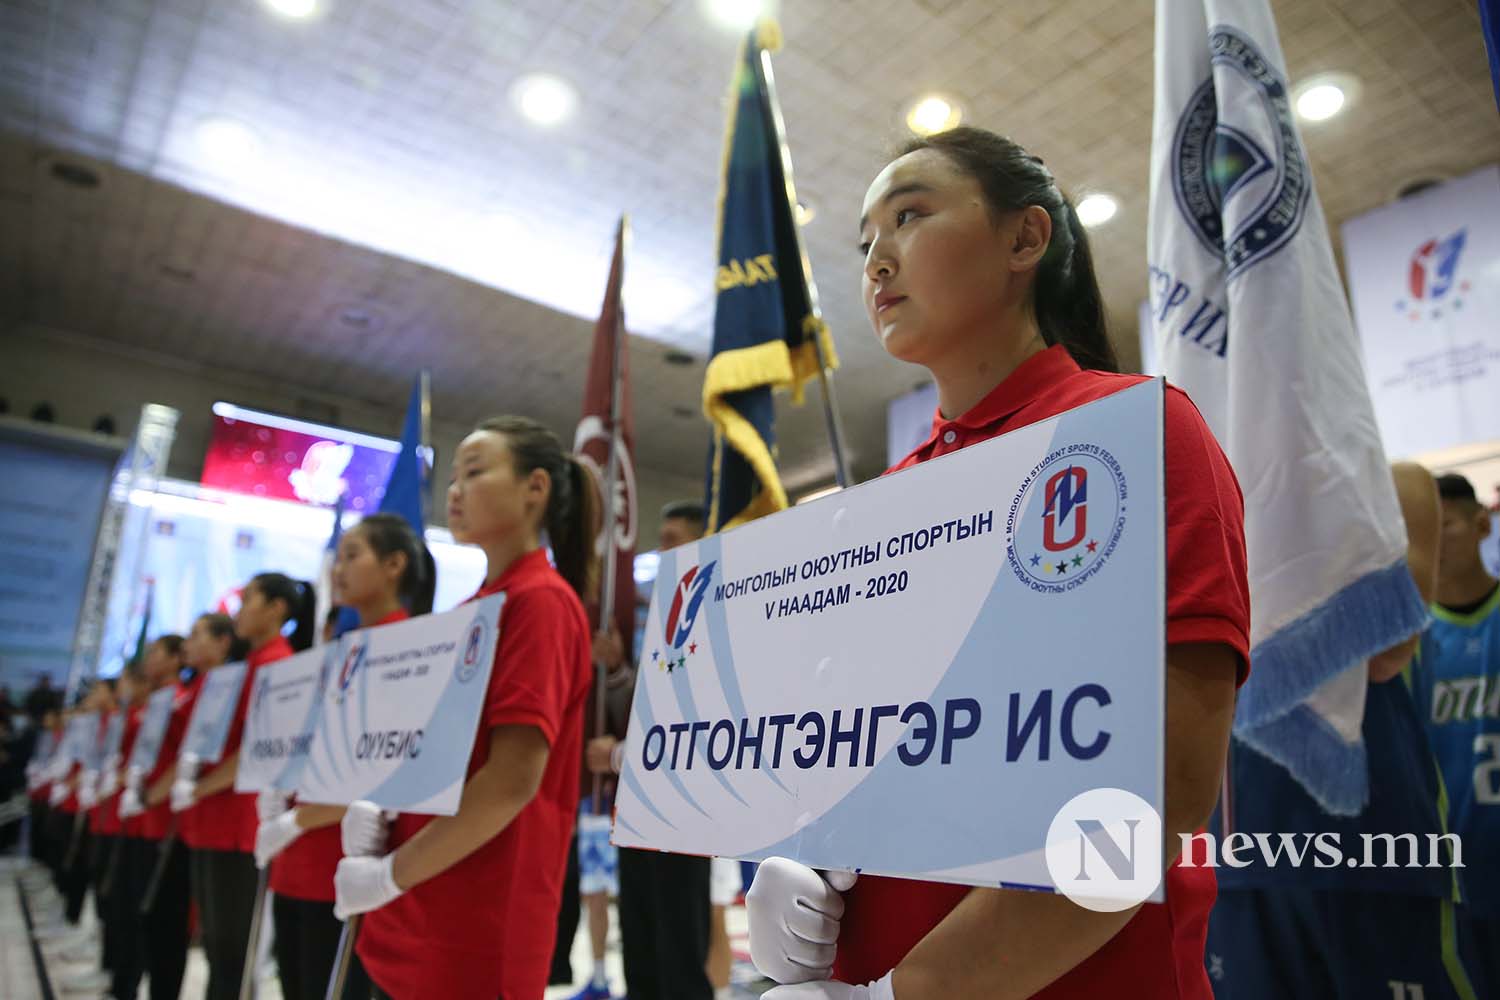 Монголын оюутны спортын 5-р наадам 2020 (4)